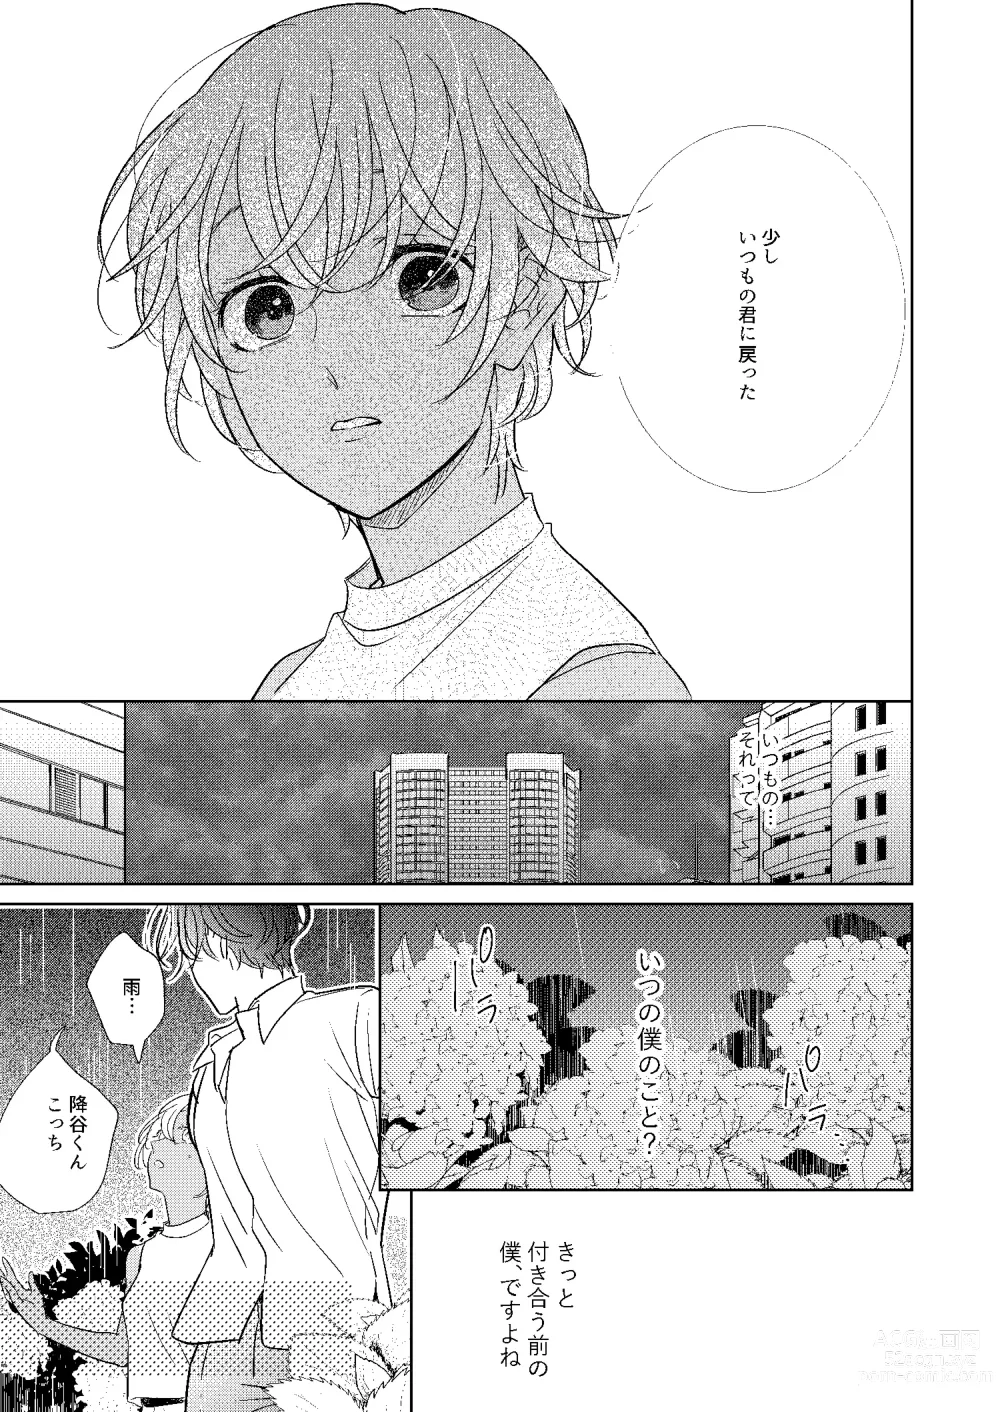 Page 26 of doujinshi Jotaika Akayasu